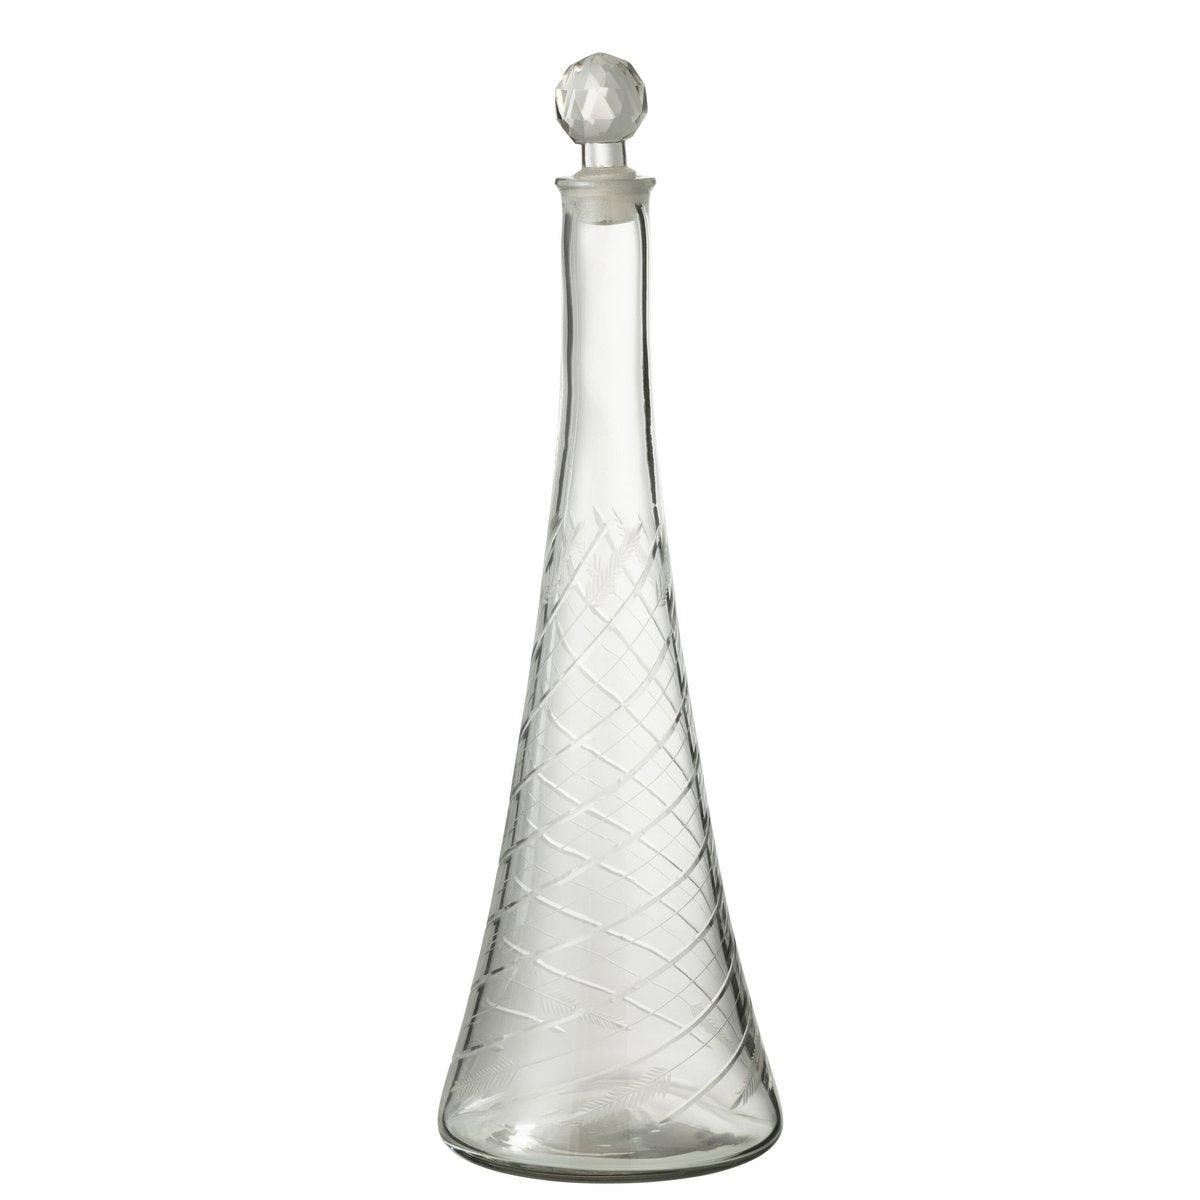 Designer Karaffe Halsglas Transparent mit verschluss 43cm - HomeDesign Knaus